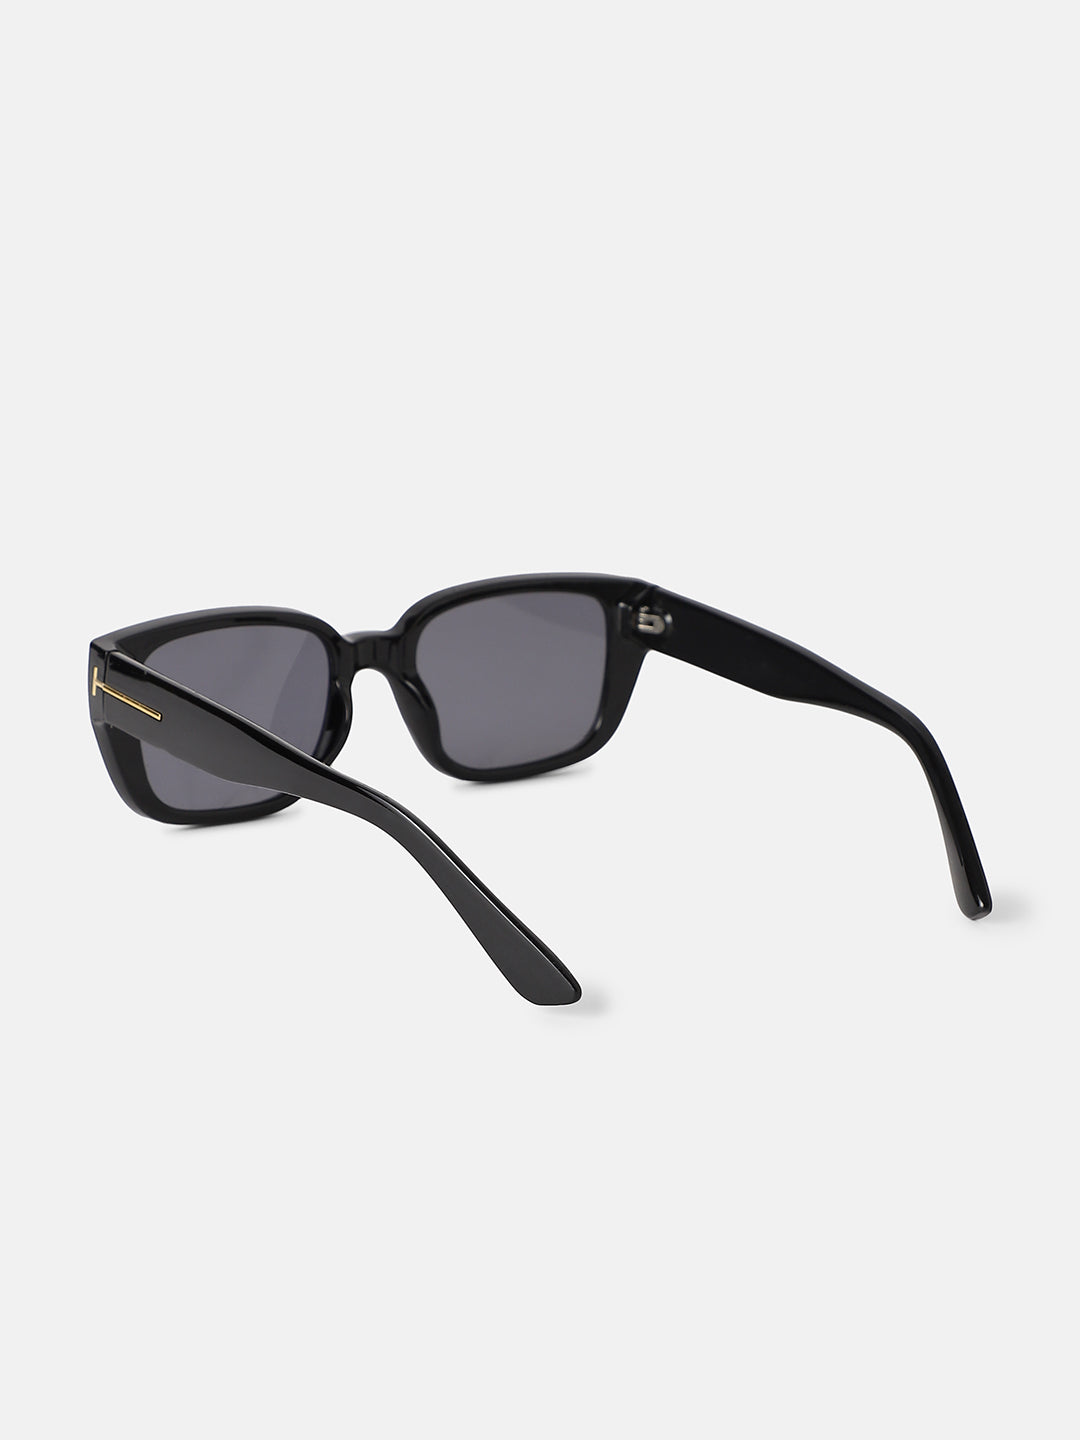 Women's Full Rim Rectangular Sunglasses - Black